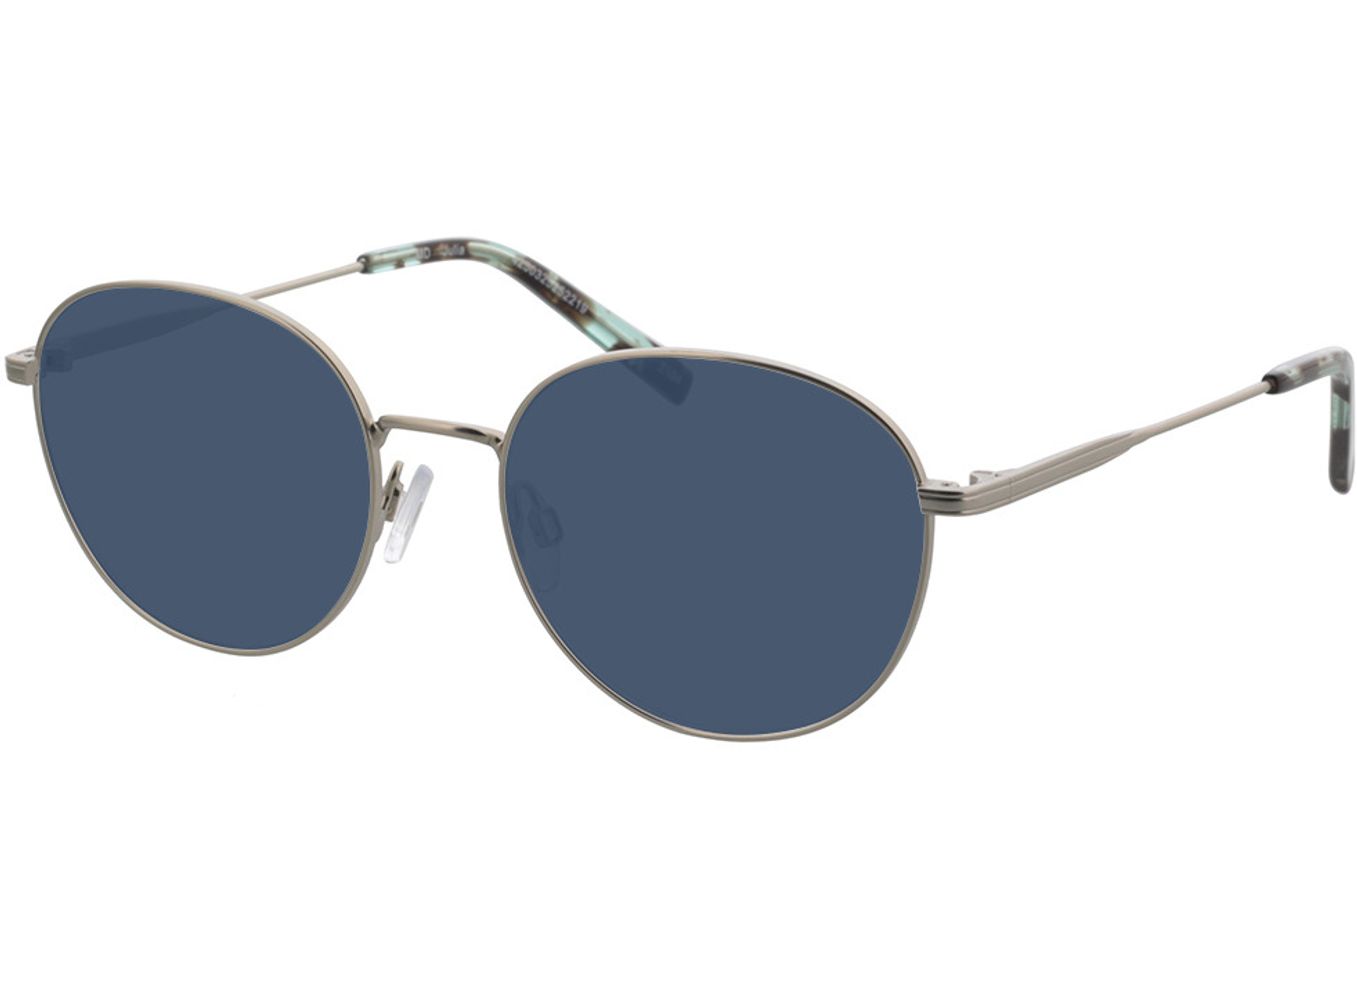 Julia - silber Sonnenbrille ohne Sehstärke, Vollrand, Rund von Brille24 Collection